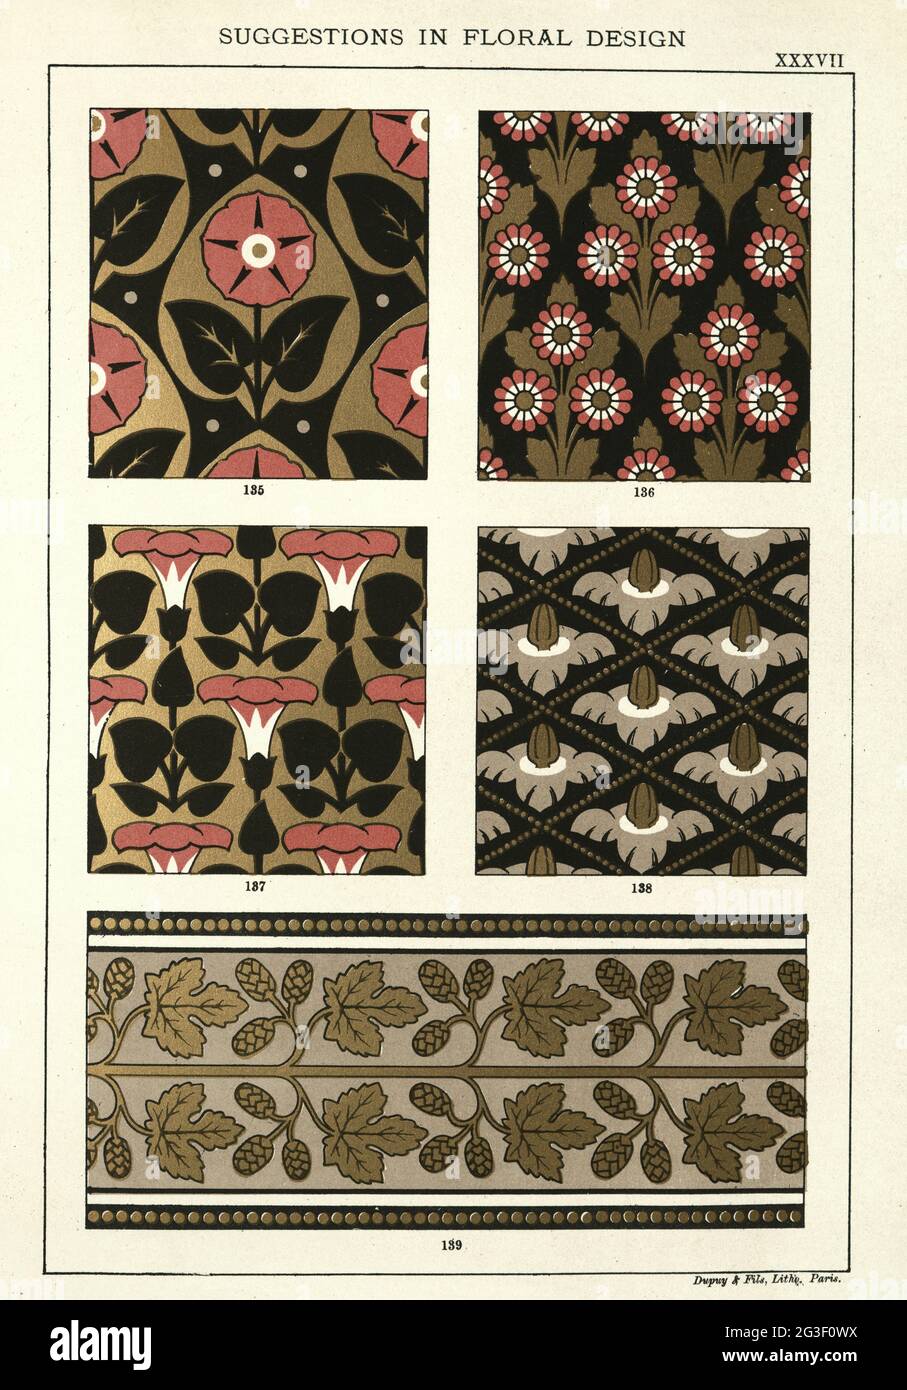 Vintage illustrazione di suggerimenti in disegno floreale, vittoriano 19 ° secolo motivi Foto Stock